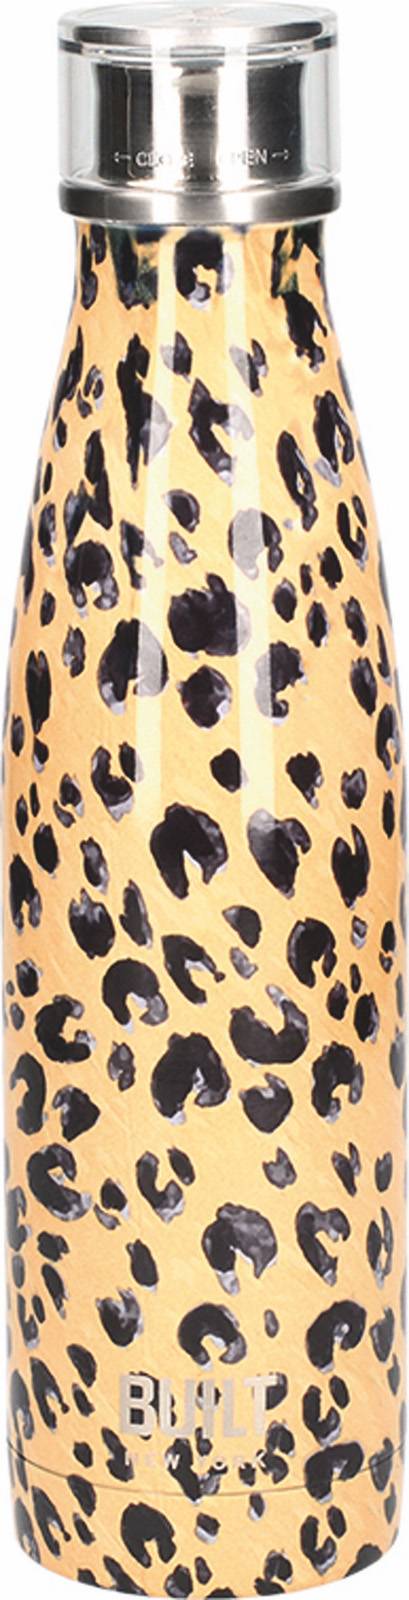 фото Бутылка термос леопард 500мл металлическая built